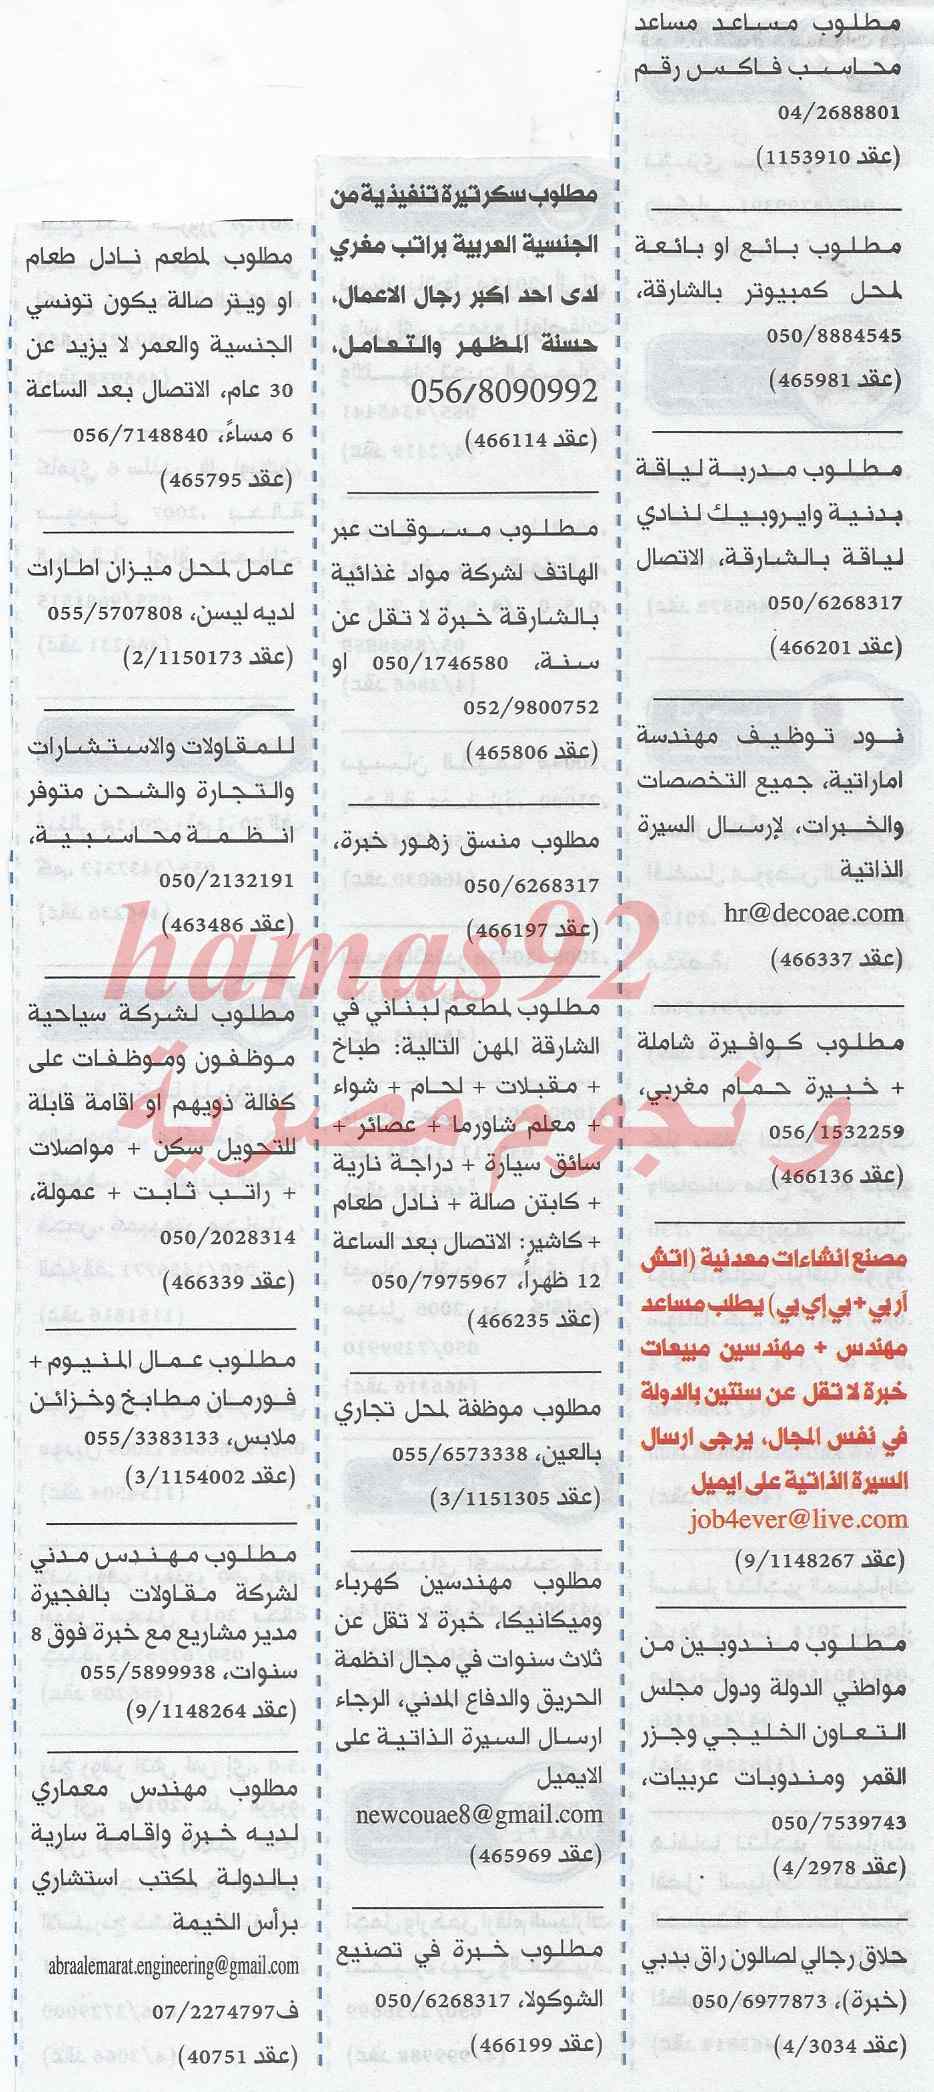 وظائف جريدة الخليج الامارات اليوم الجمعة 21-2-2014 , وظائف خالية في الامارات اليوم 21 فبراير 2014